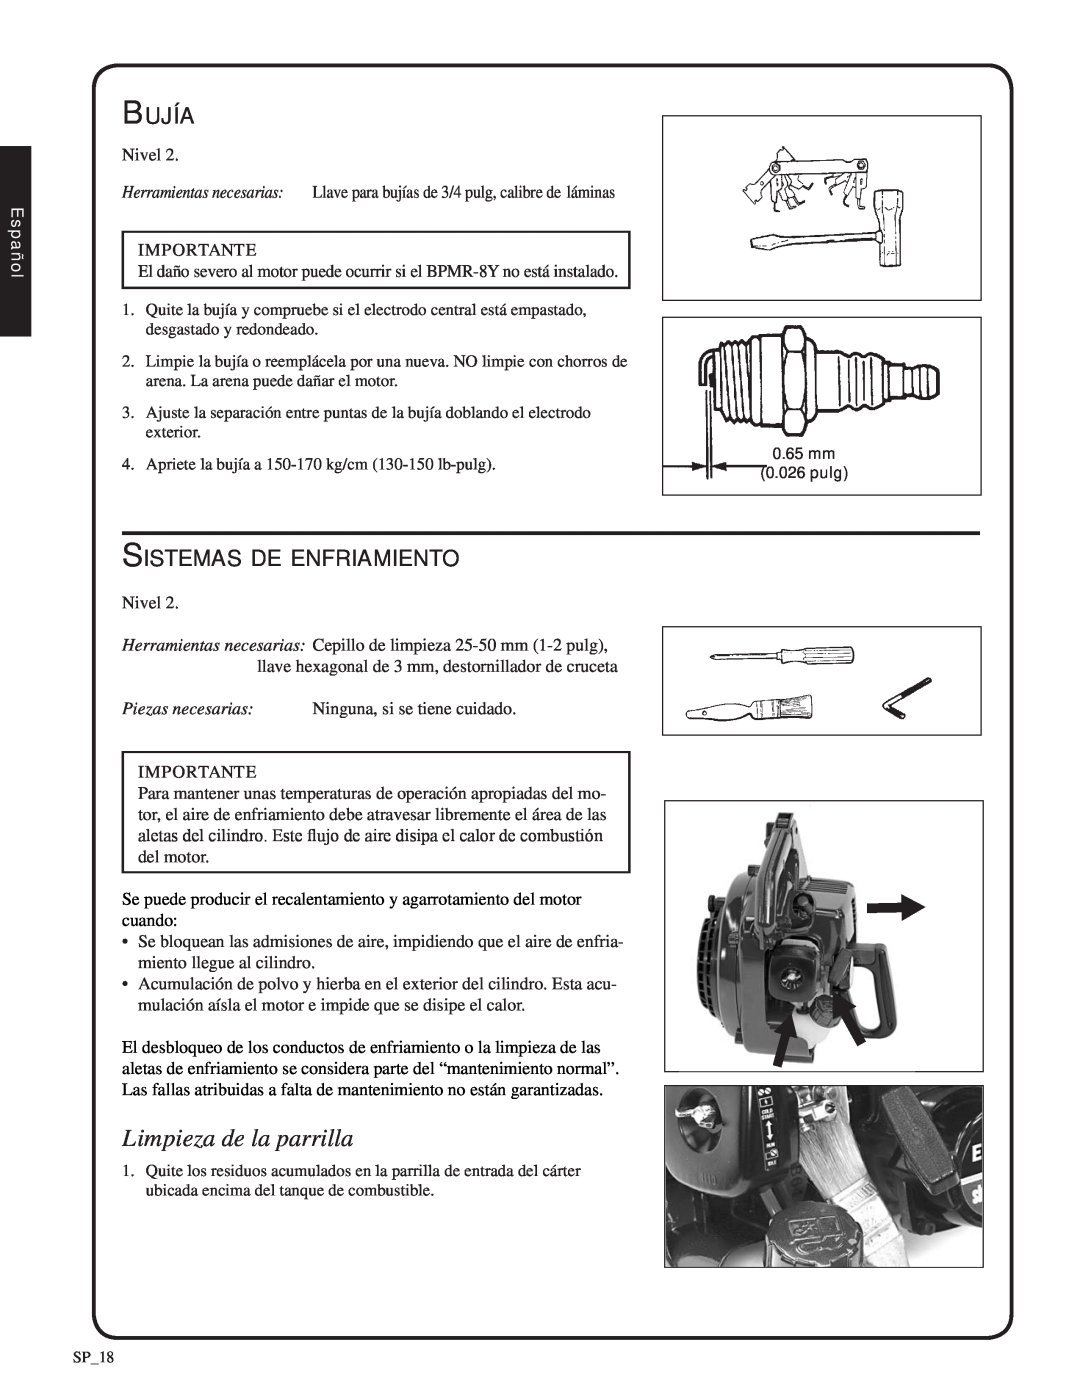 Shindaiwa SV212, 82052 manual Limpieza de la parrilla, Bujía, Sistemas de enfriamiento, Español 